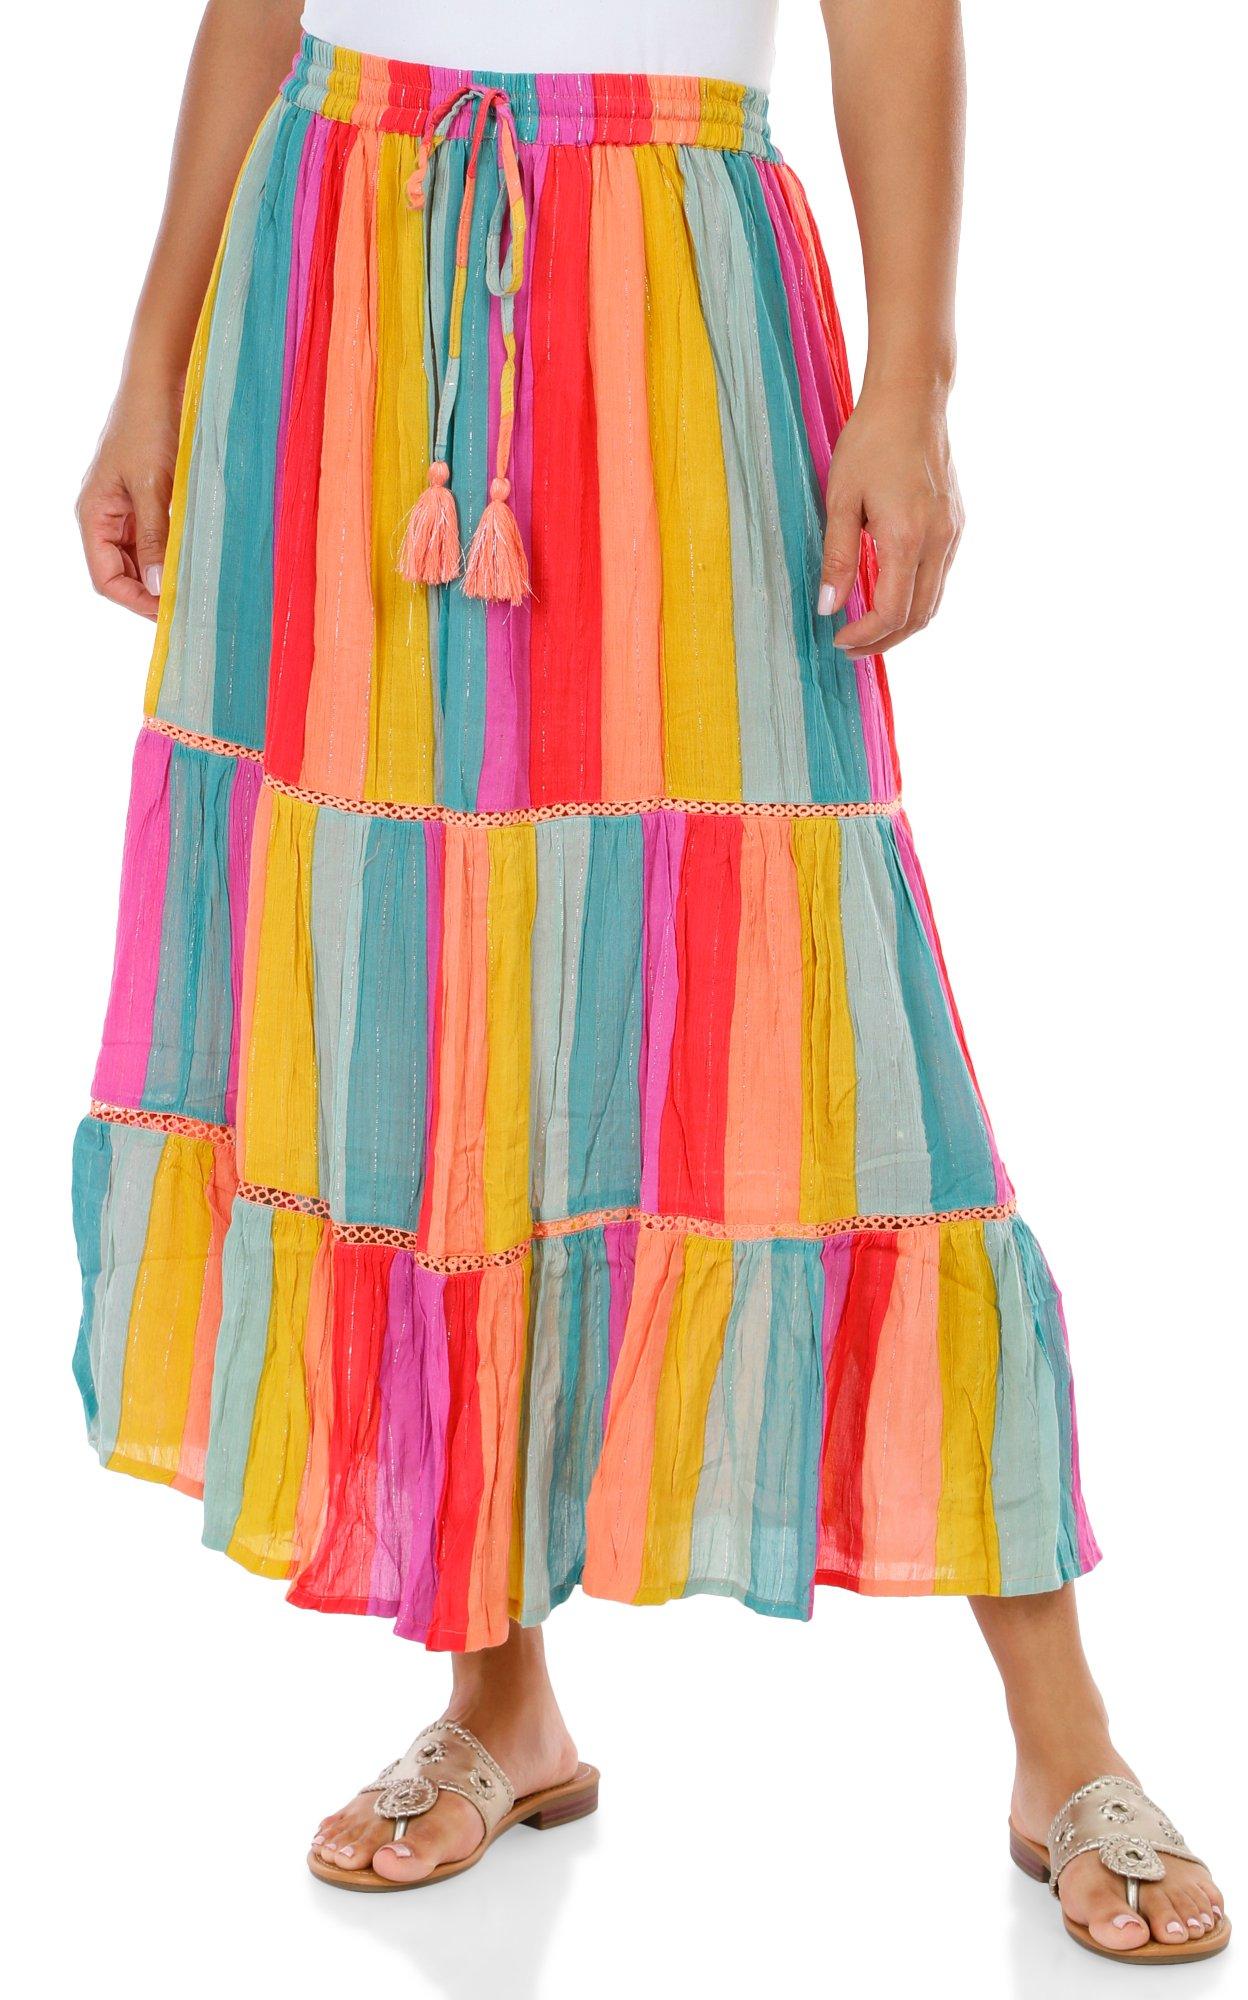 Women's Stripe Maxi Skirt